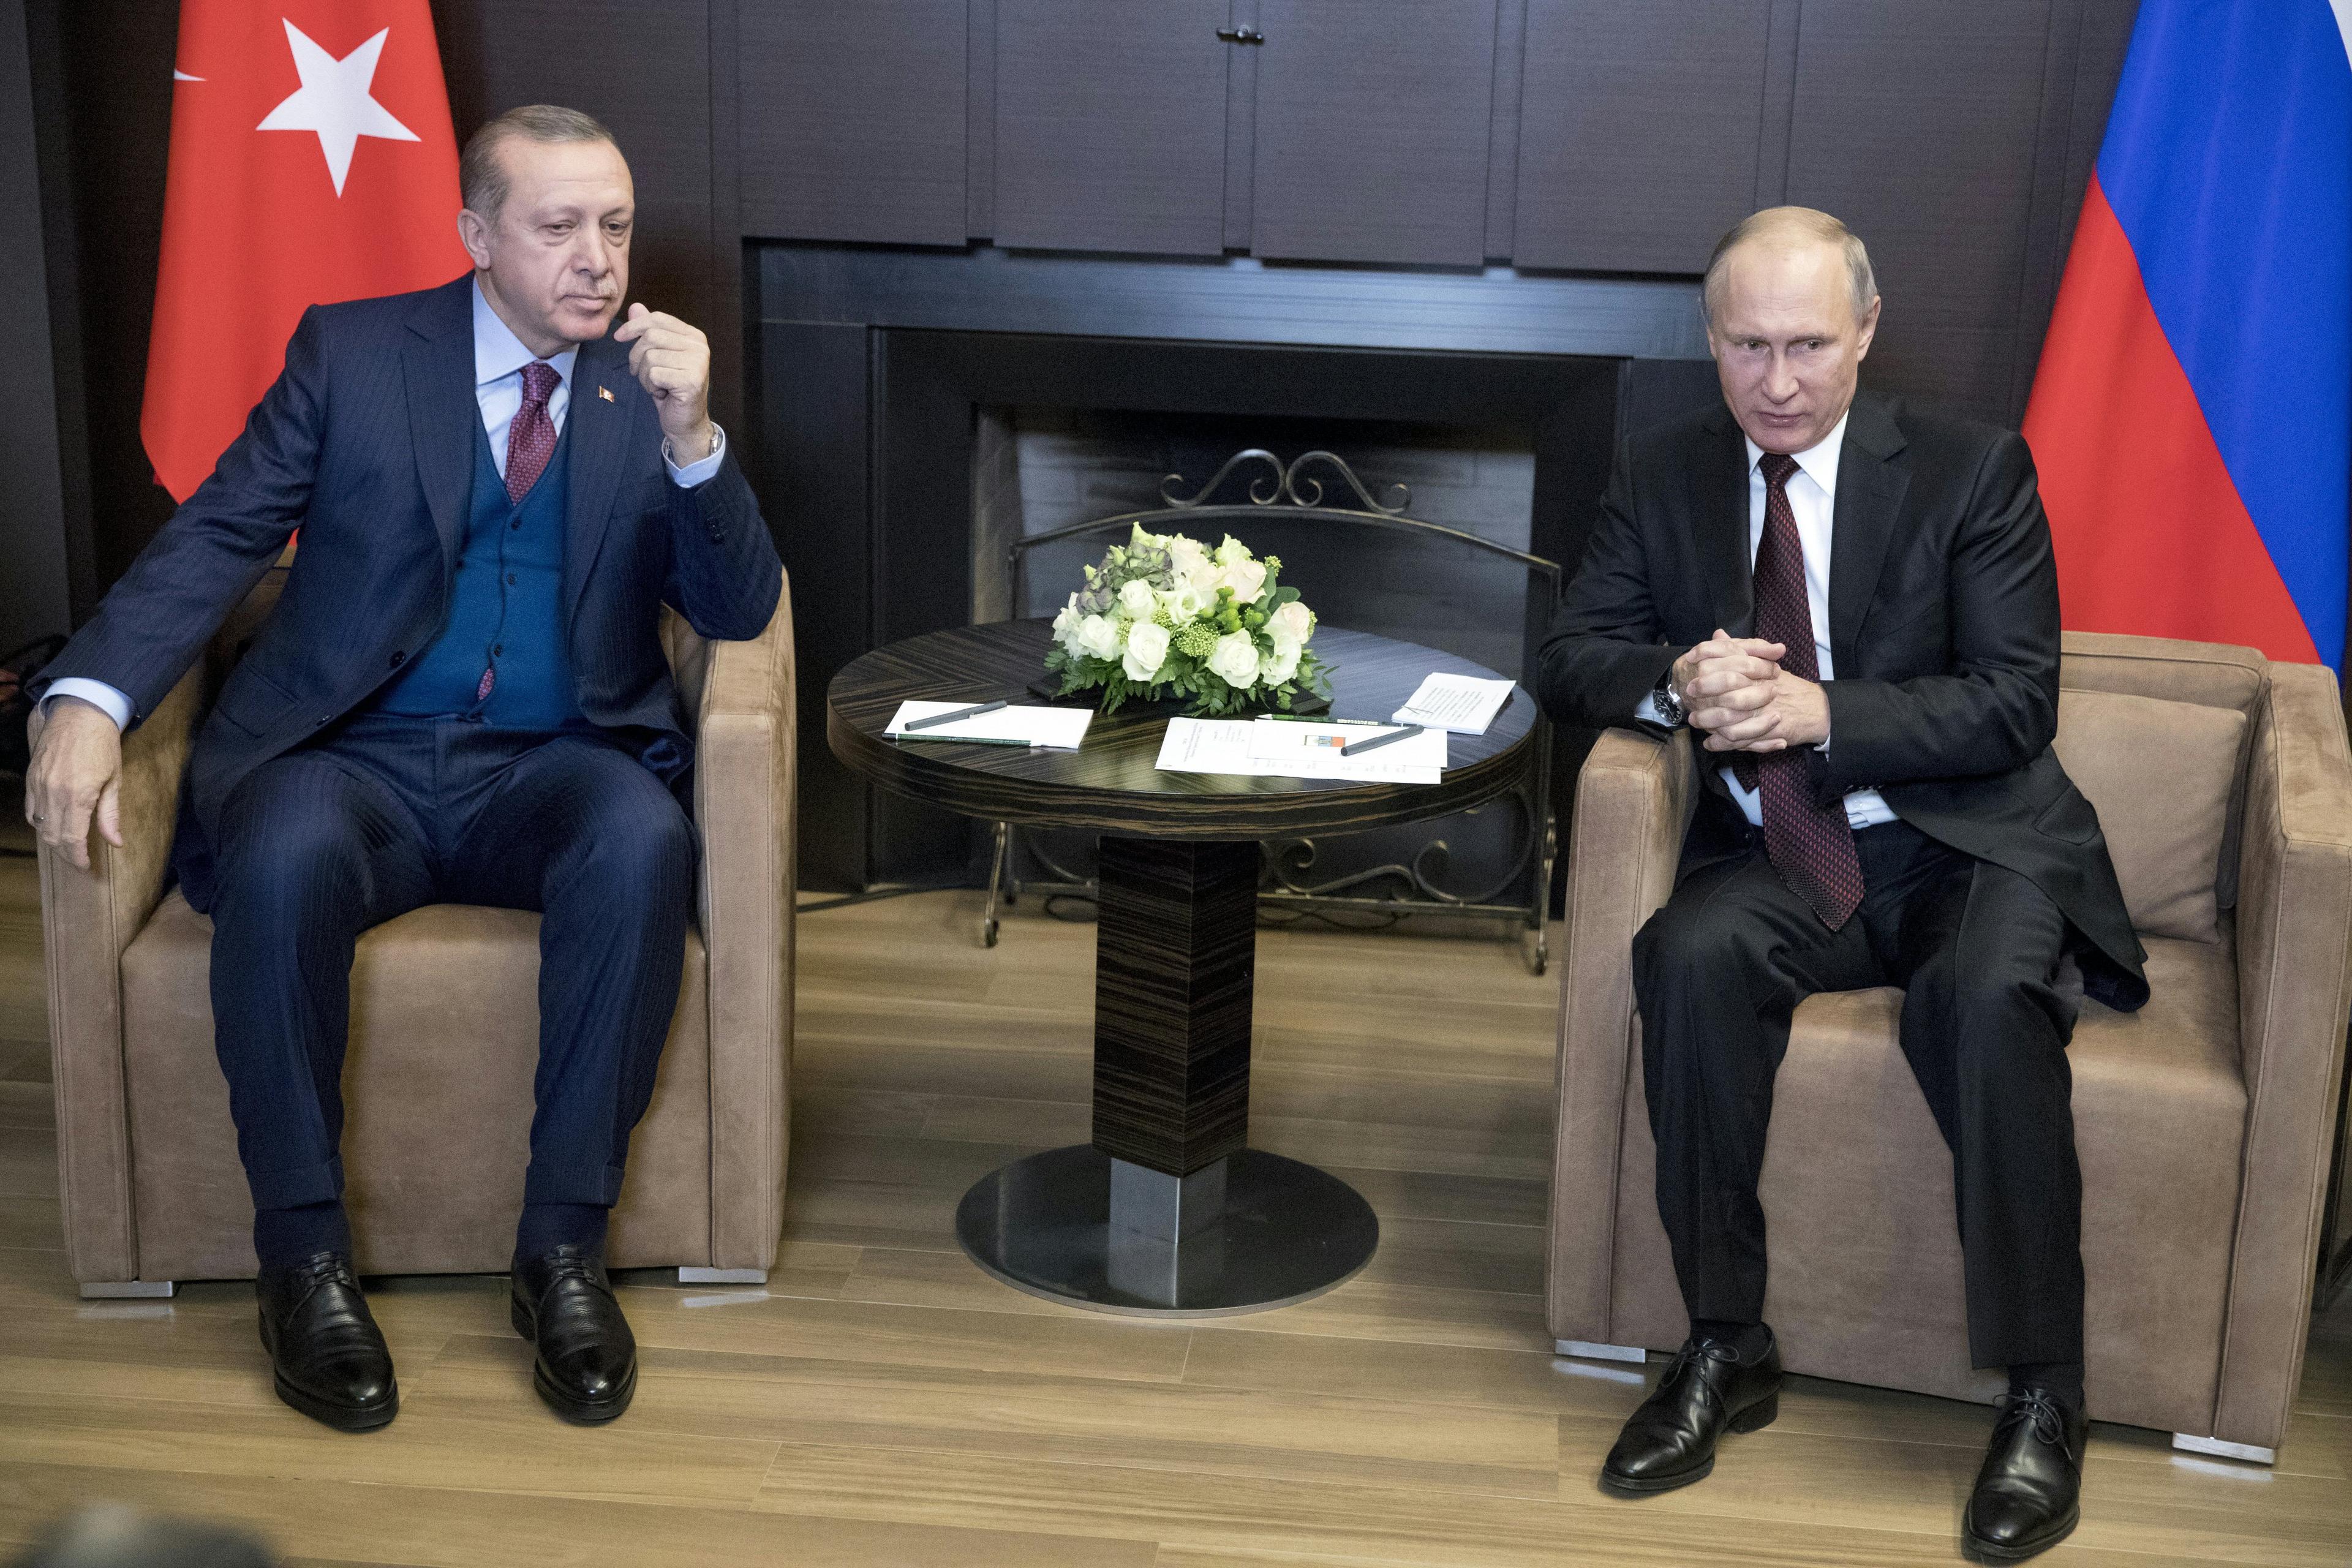 Erdoan i Putin: Usložnjena situacija u Kerčkom tjesnacu - Avaz